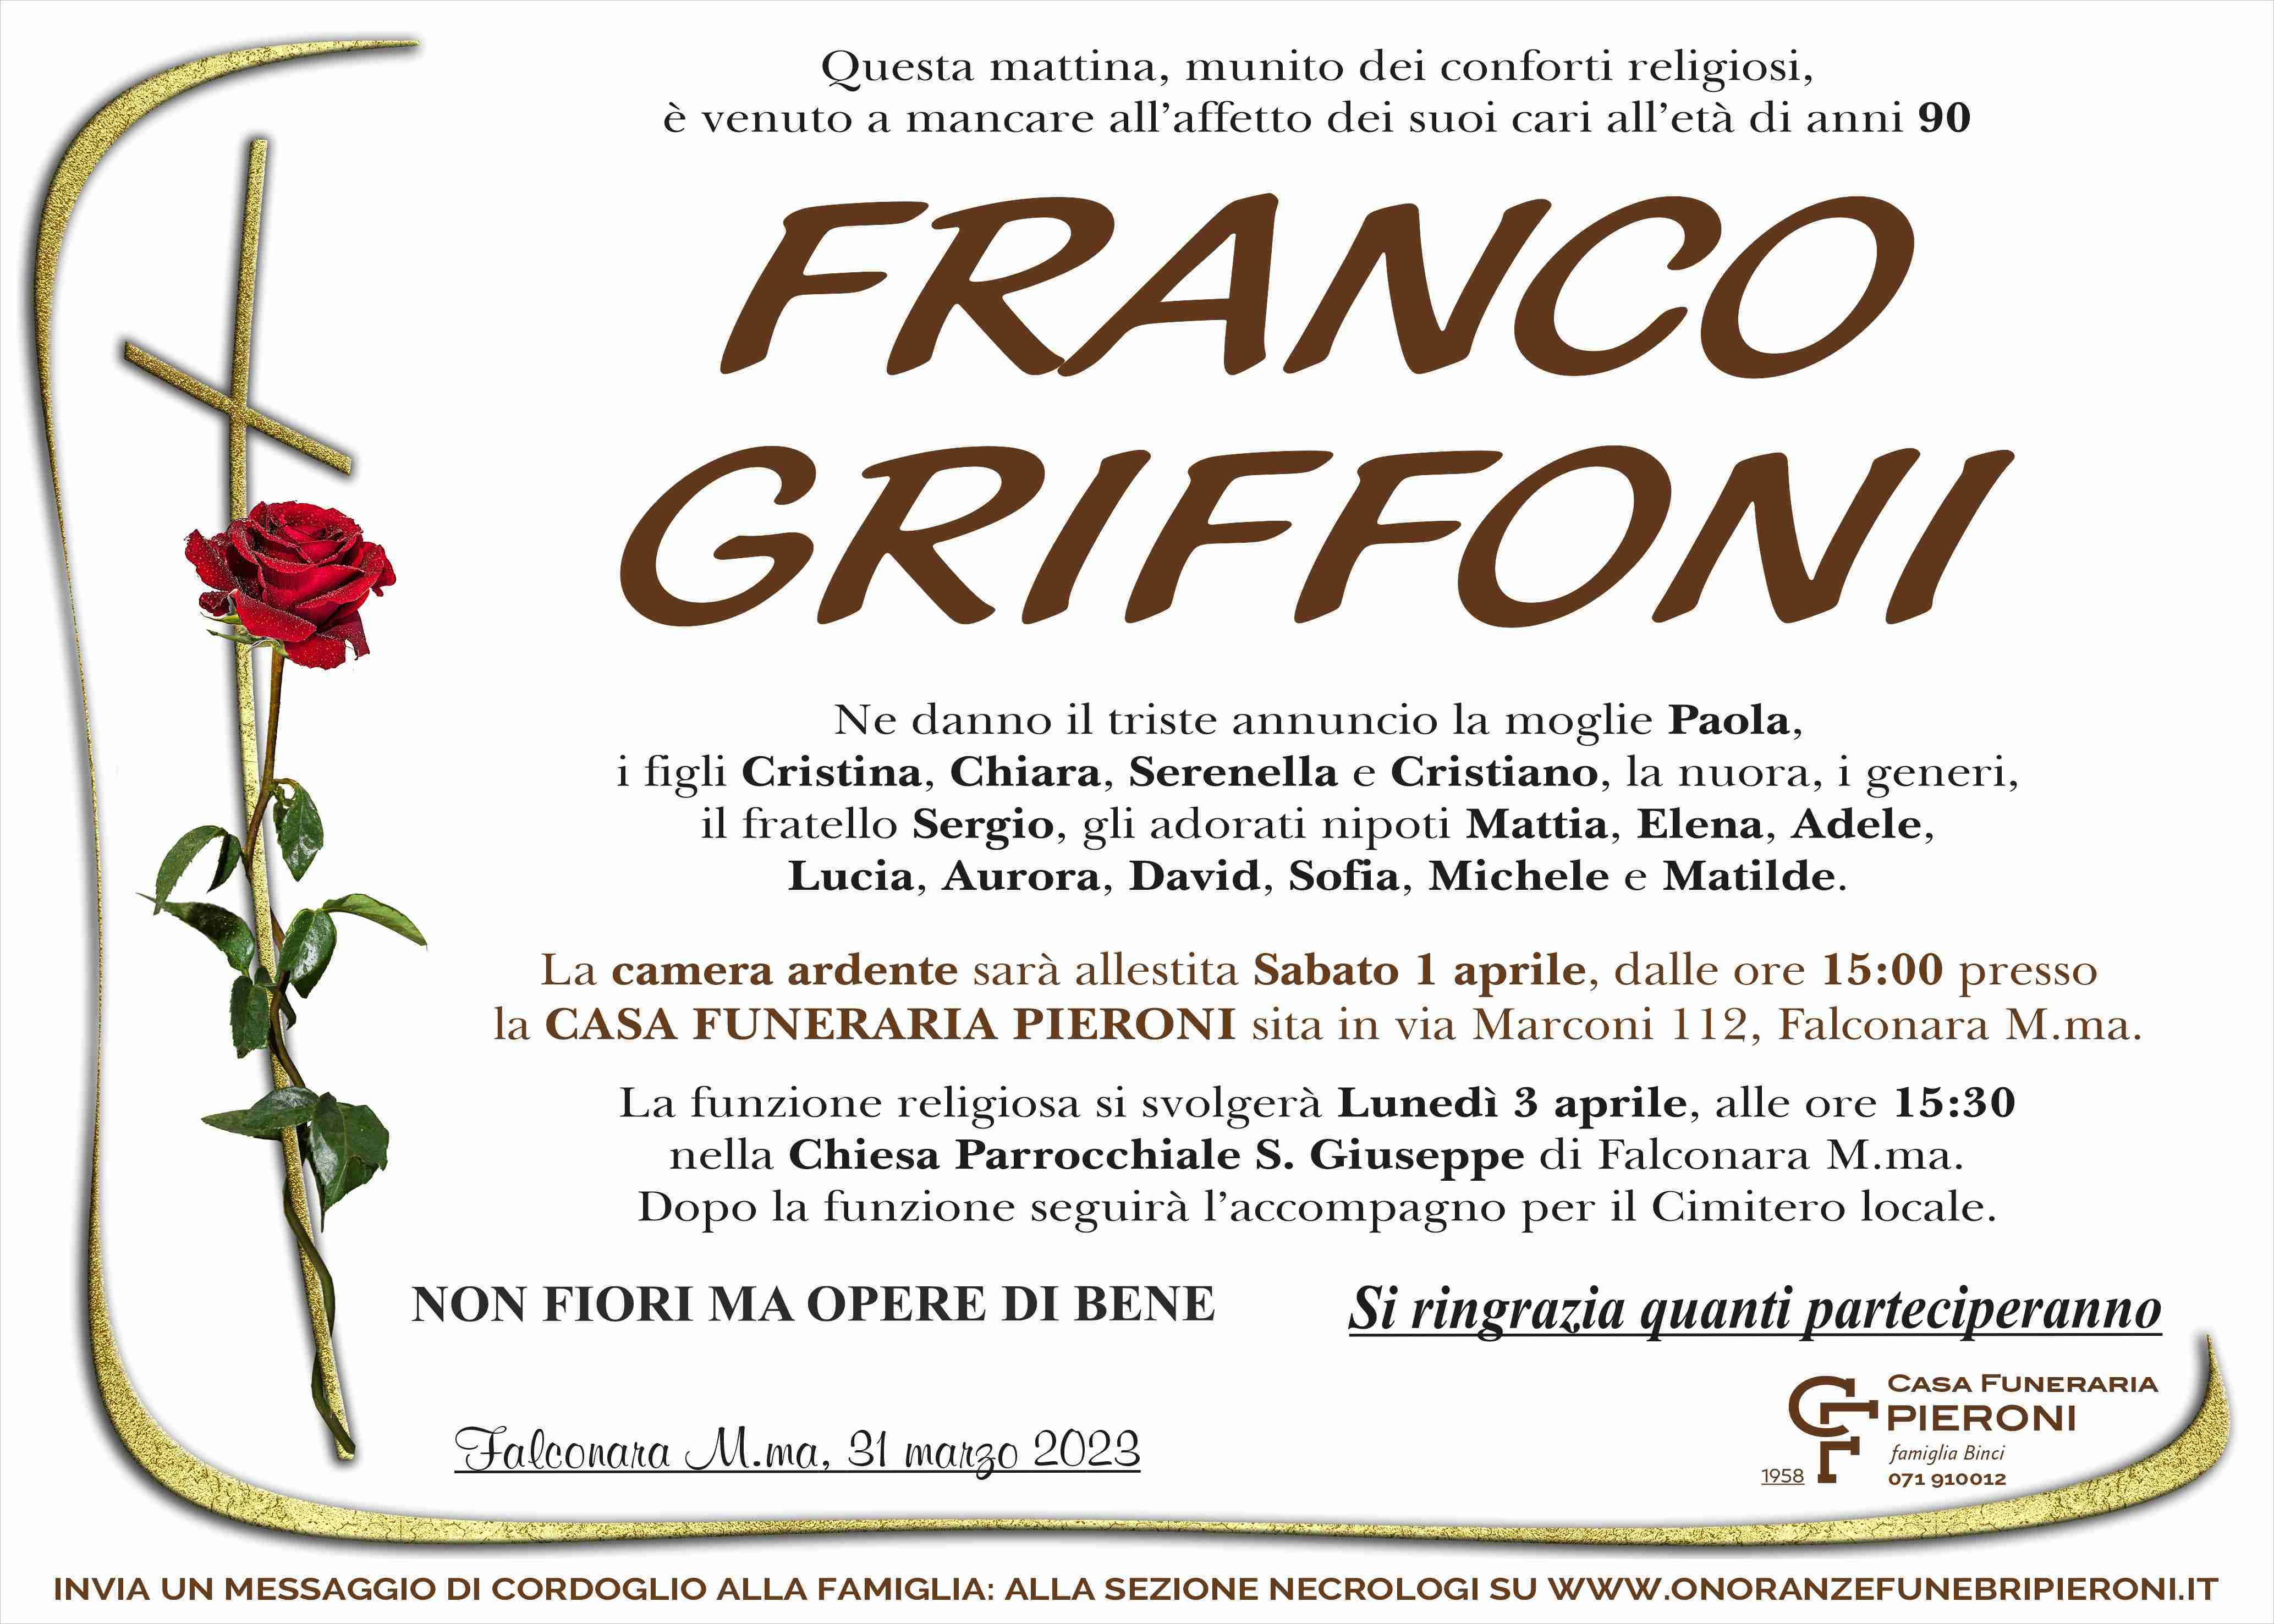 Franco Griffoni